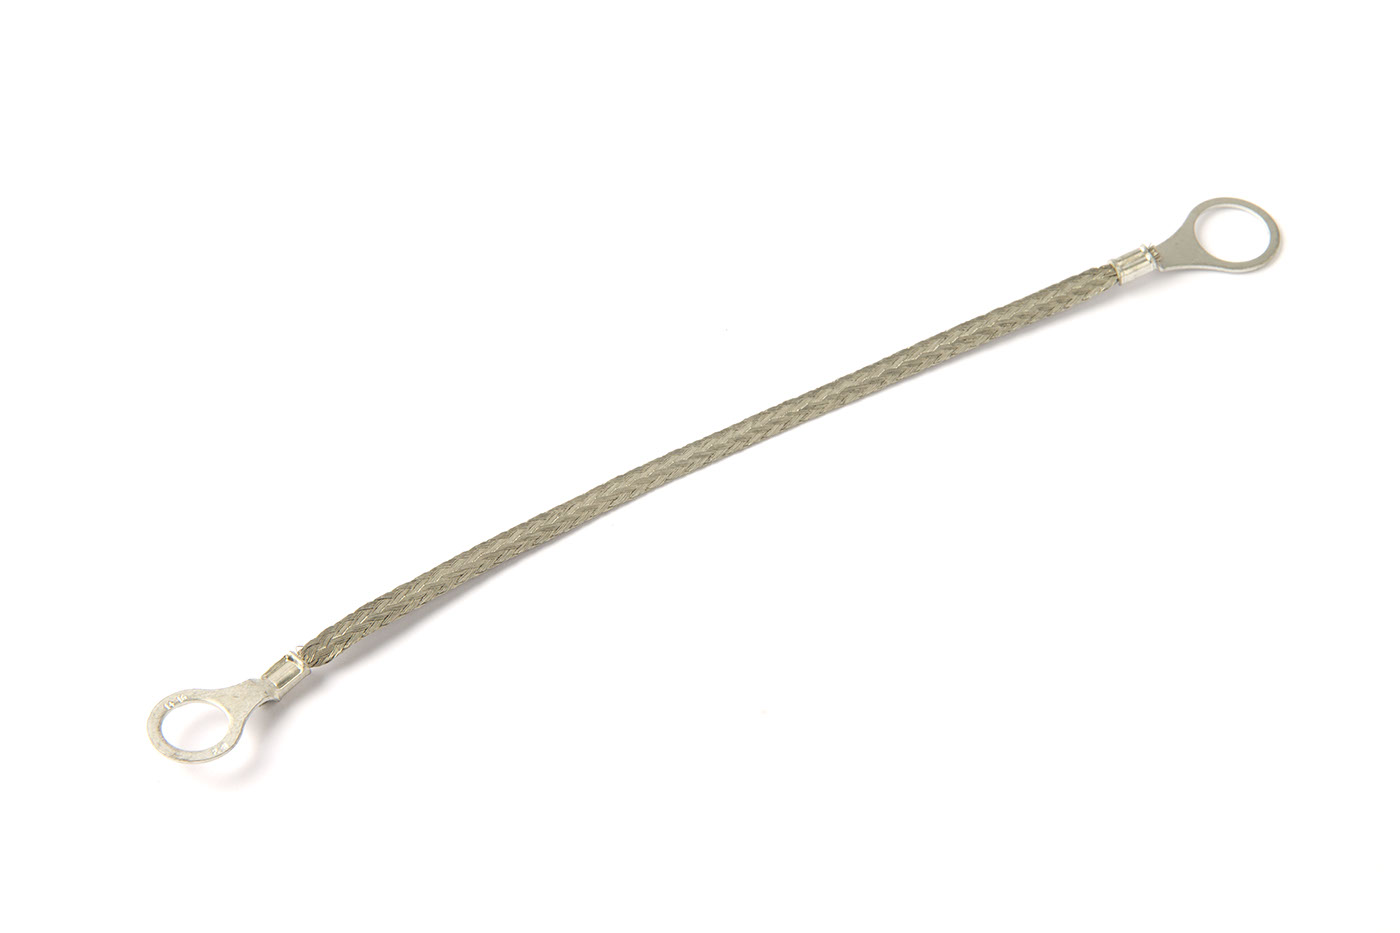 Massekabel
Earth cable
Câble de masse
Cable compacto